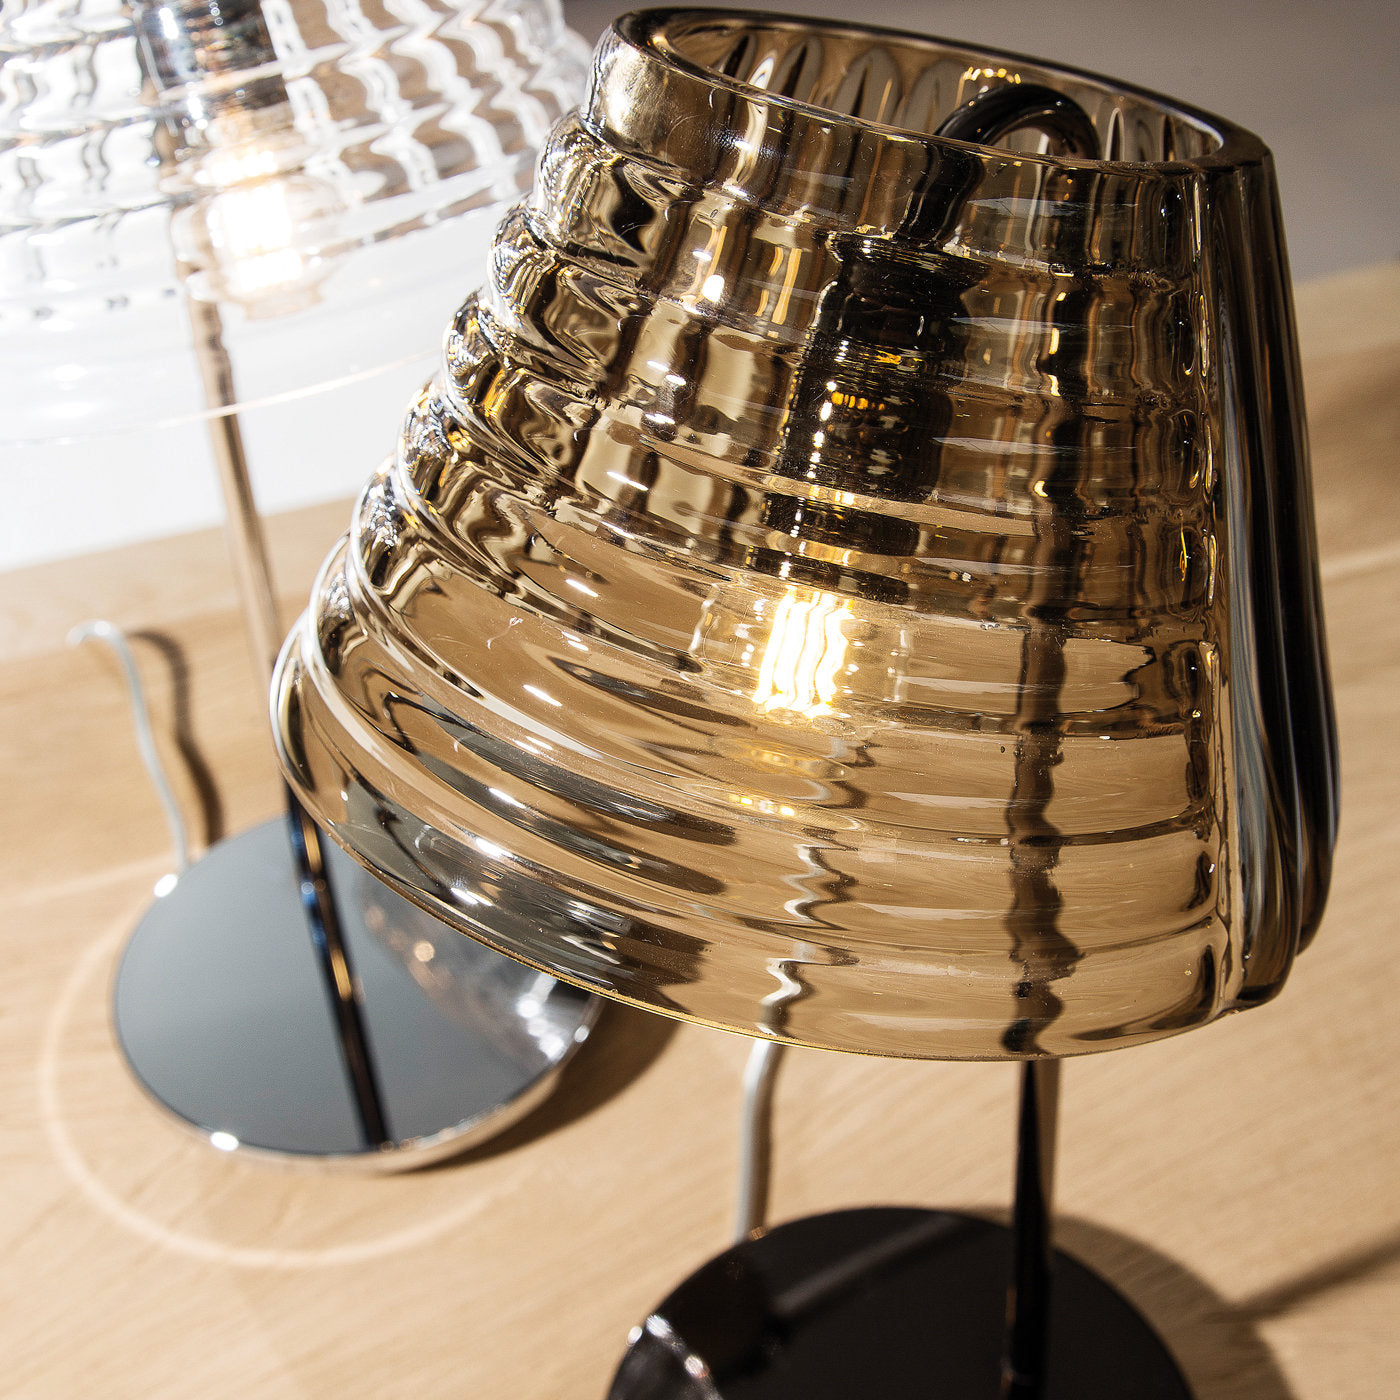 Profili Table Lamp by Giovanni Barbato - Alternative view 2